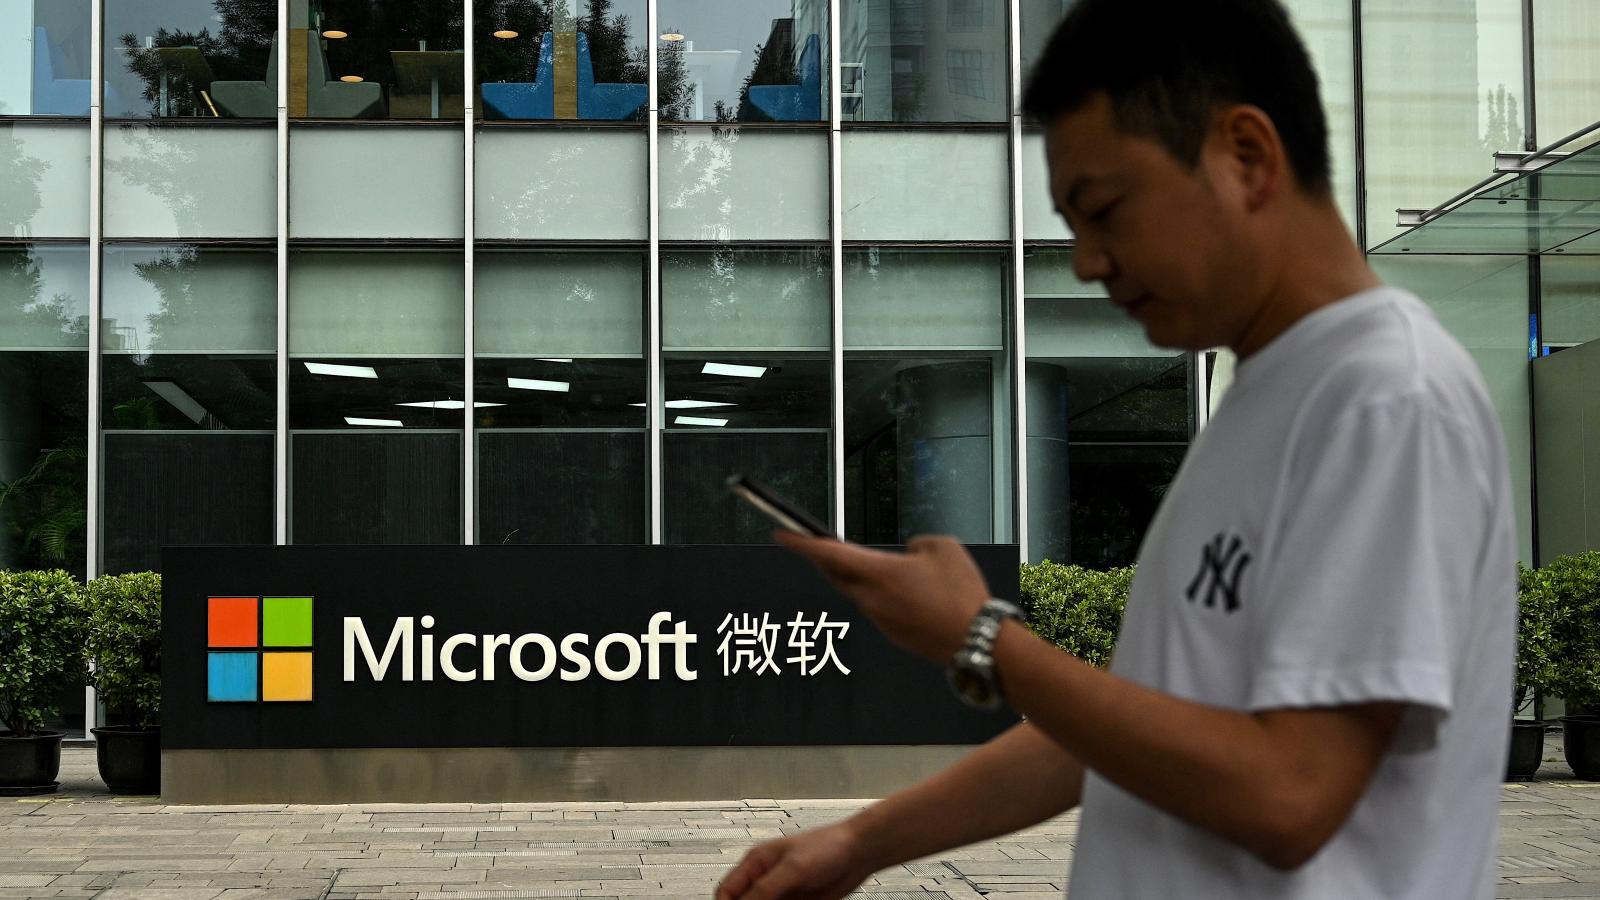 Microsoft, July 20, 2021, Beijing, China